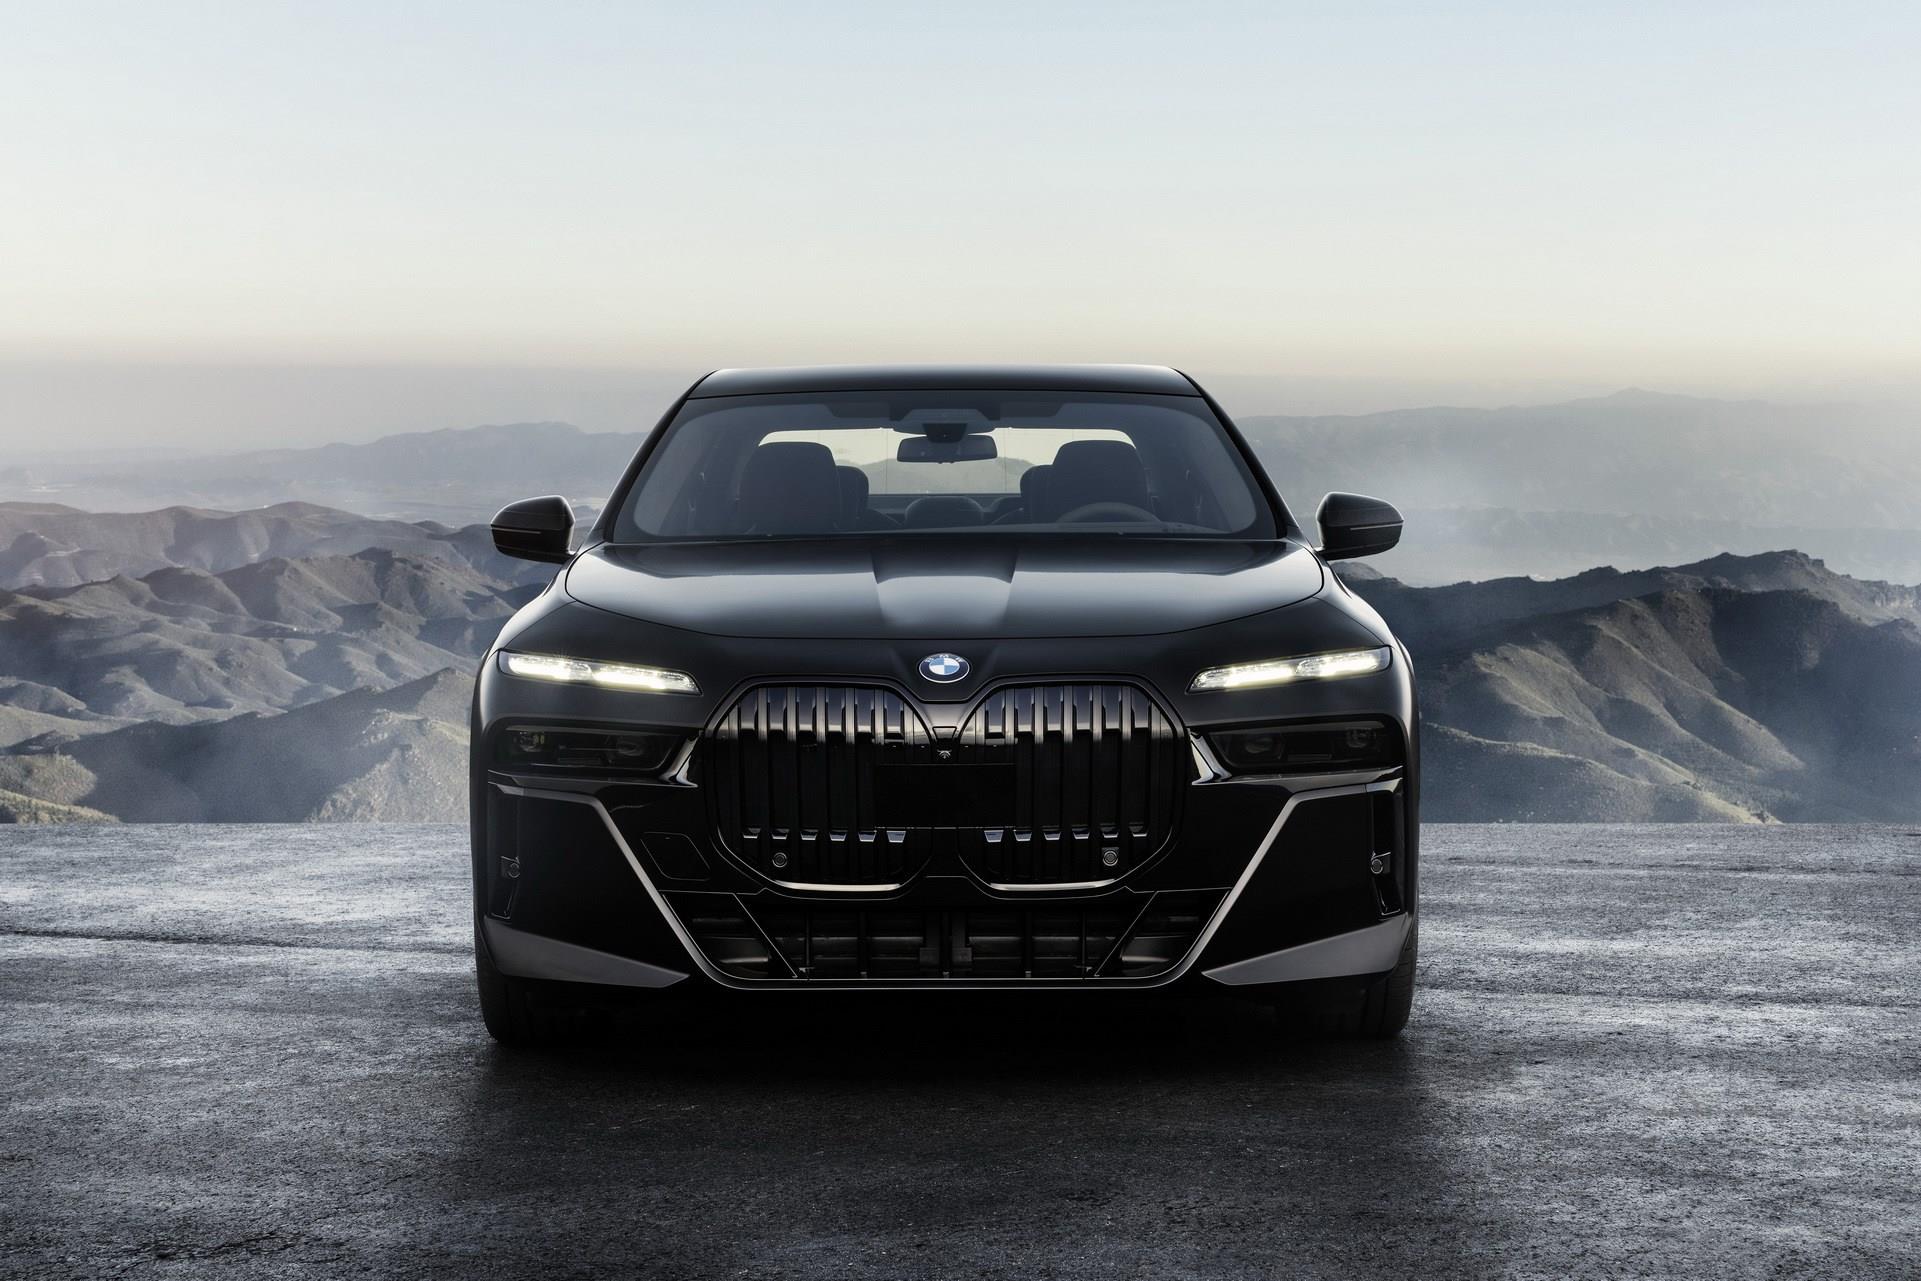 2022 BMW 7-Serisi tanÄ±tÄ±ldÄ±: Ä°Åte tasarÄ±mÄ± ve Ã¶zellikleri - Otomobil |  DonanÄ±mHaber